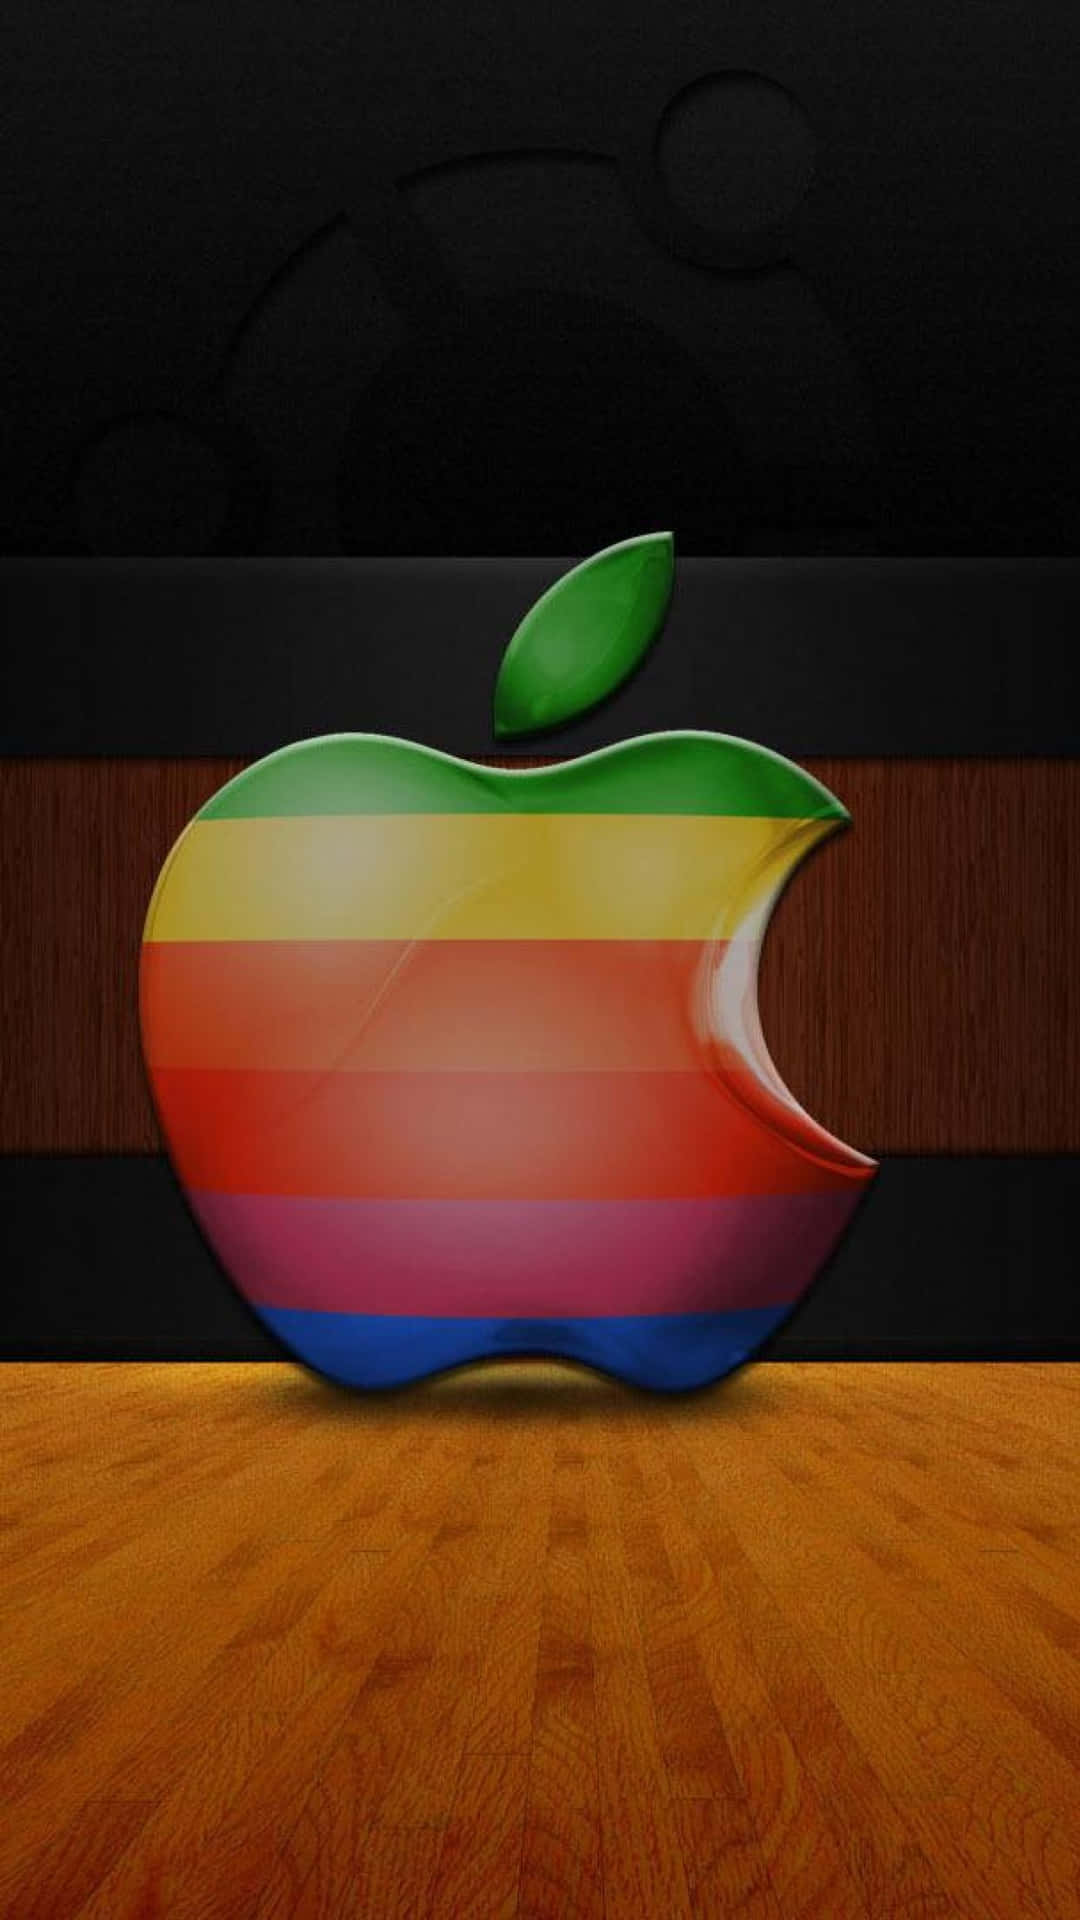 Firaikoniska Apple-logotypen.